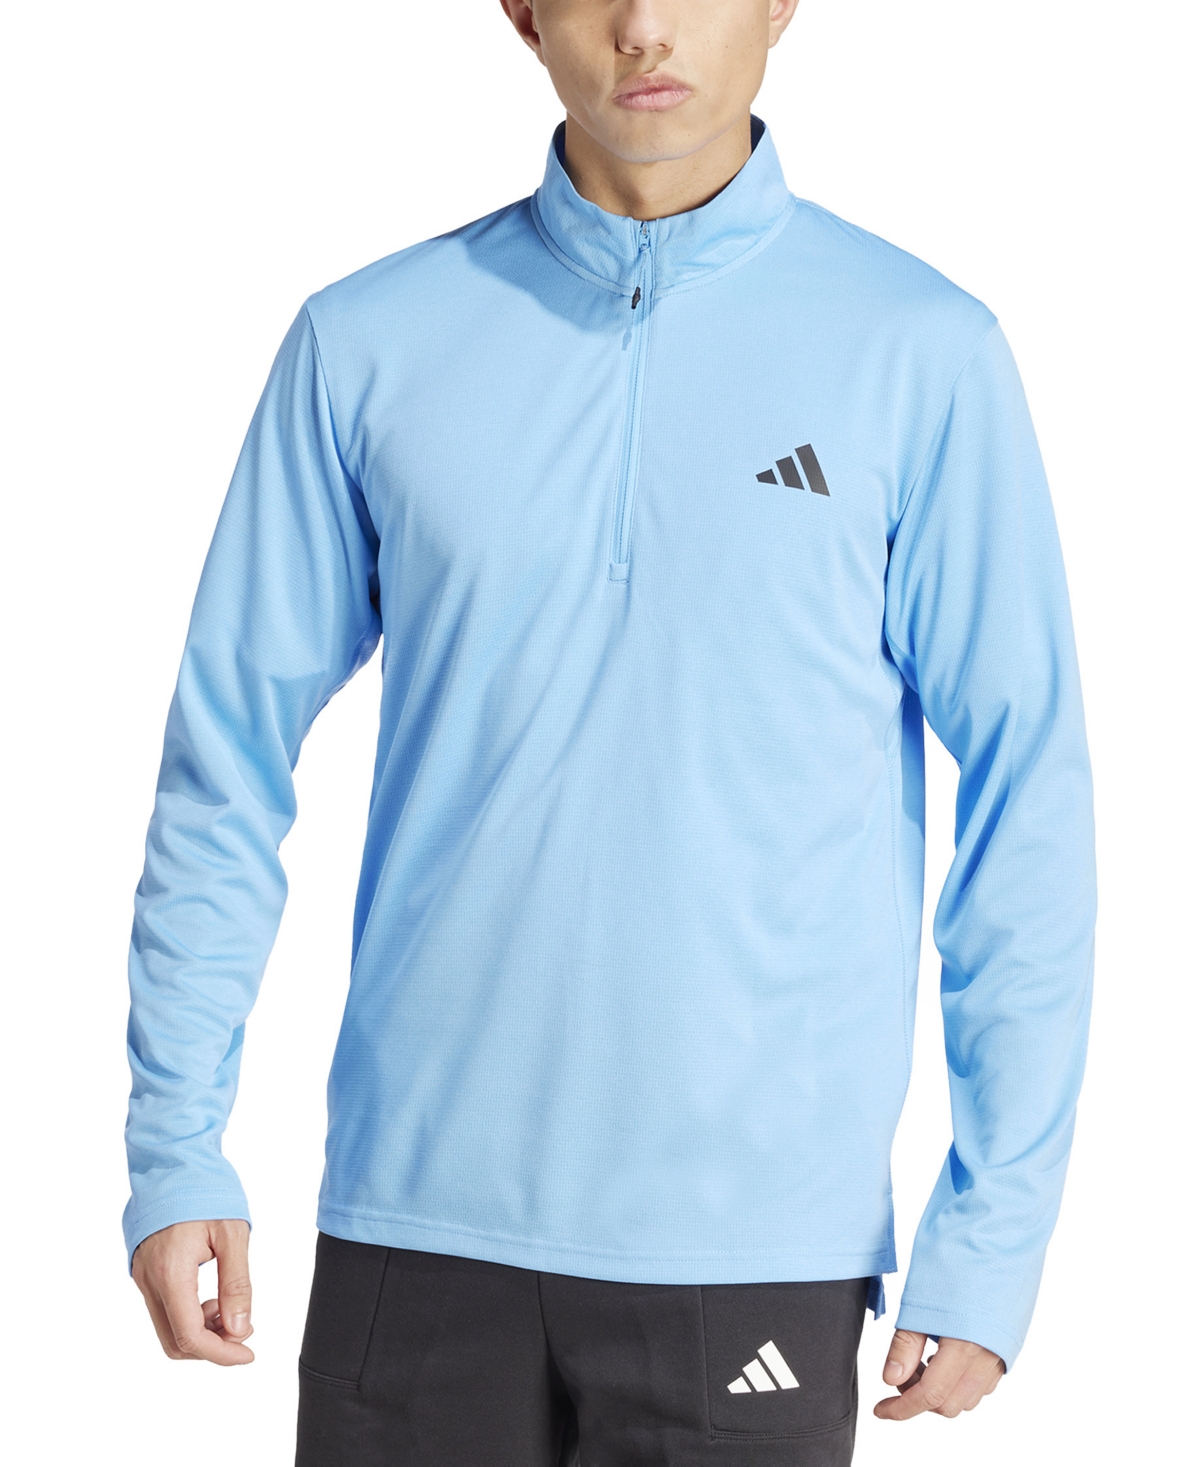 Adidas Originals Men's Essentials Training Quarter-zip Long-sleeve Top In Blue Burst